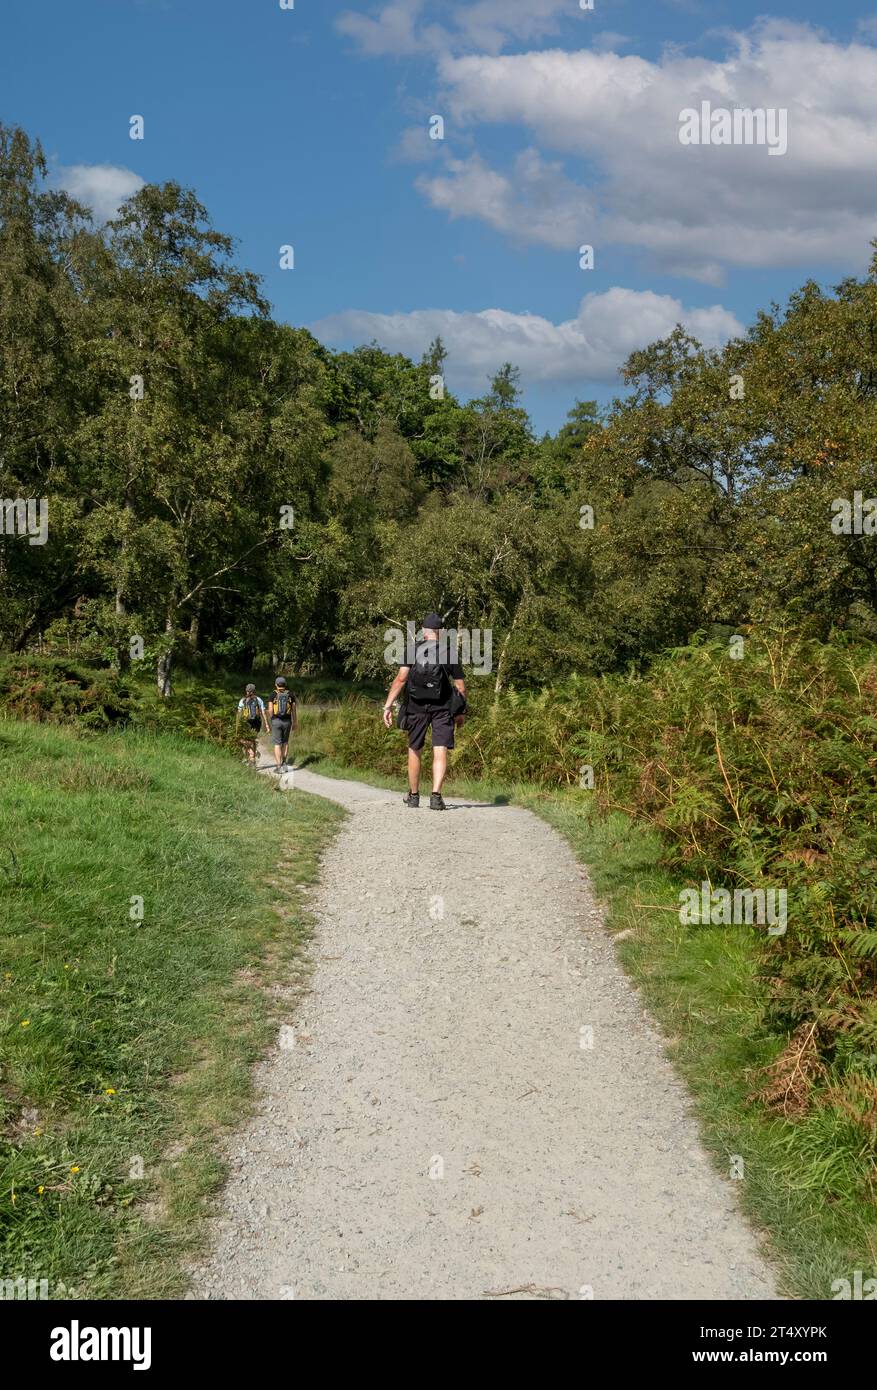 Homme personne marche les gens marchant sur le sentier à Manesty Woods forêt de forêt Derwentwater en été Lake District National Park Cumbria Angleterre Royaume-Uni Banque D'Images